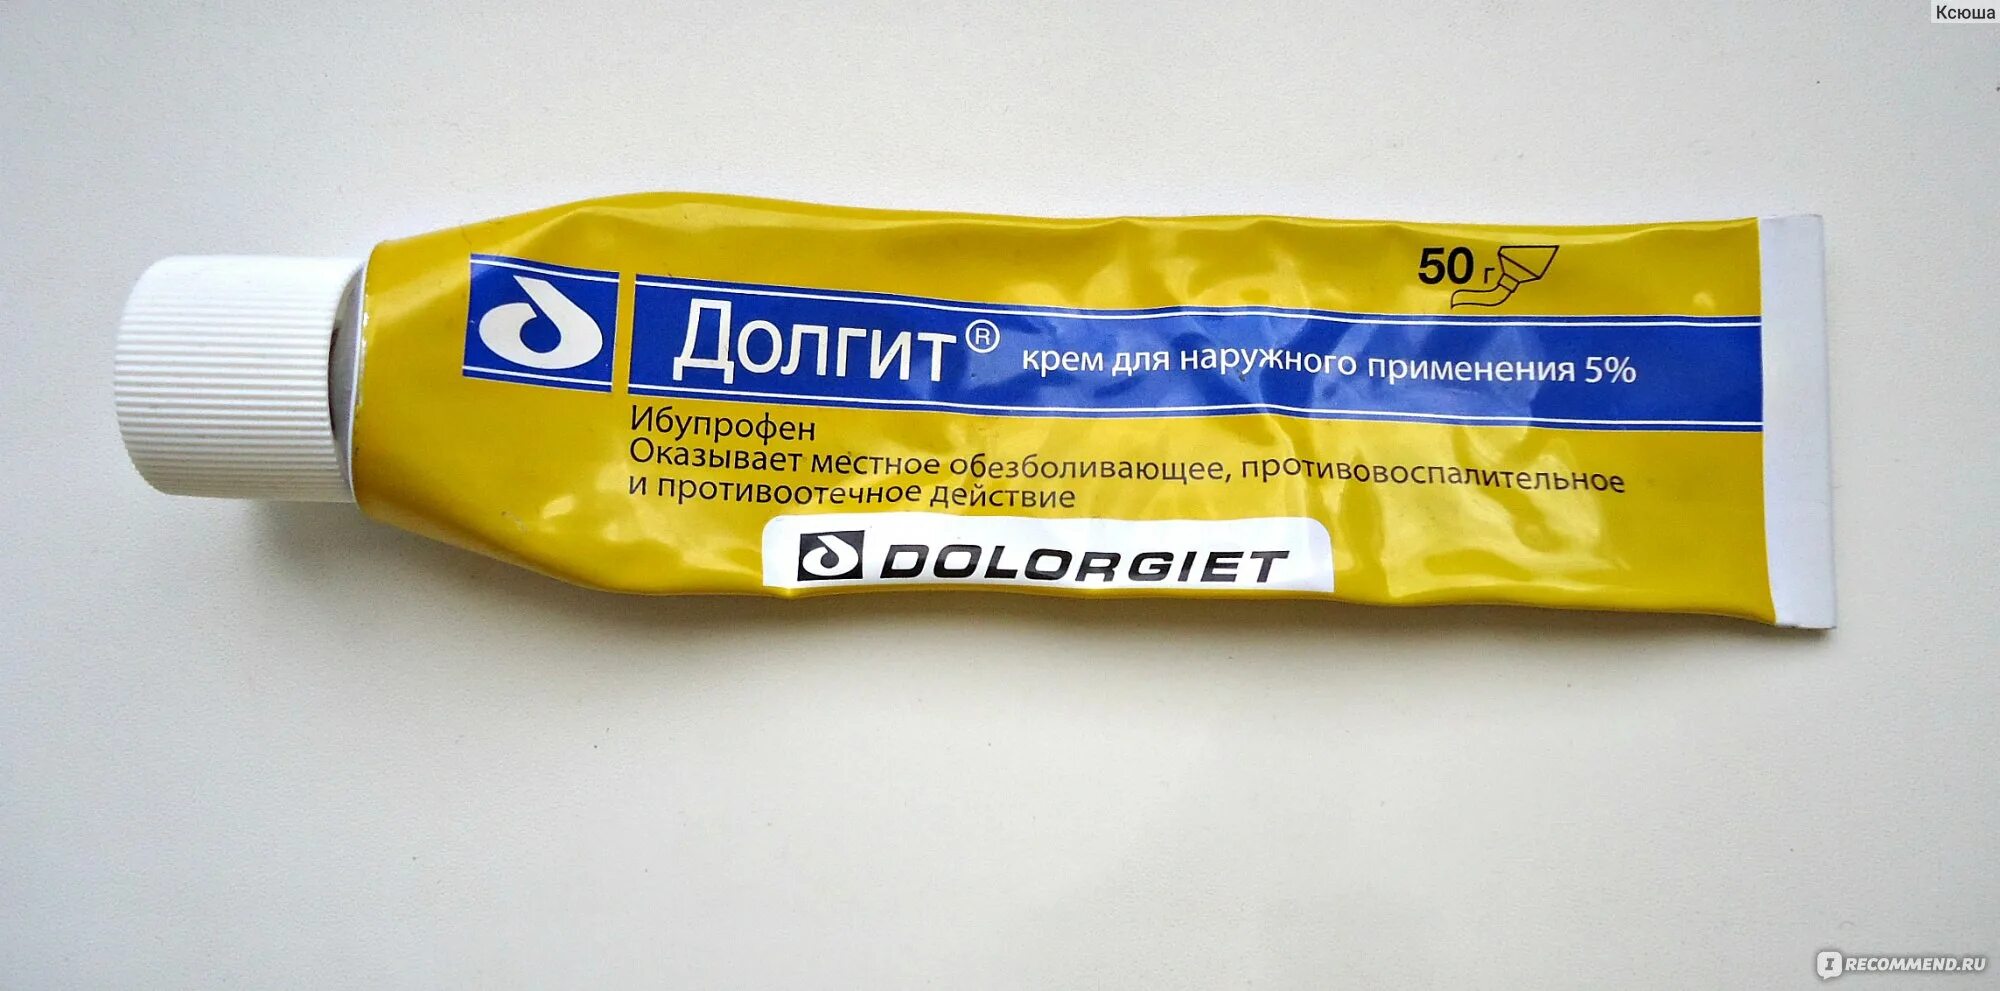 Мазь долгит в желтой упаковке. Мазь ибупрофен Долгит. Жёлтый долггит крем Долгит. Ибупрофен мазь в желтой упаковке.